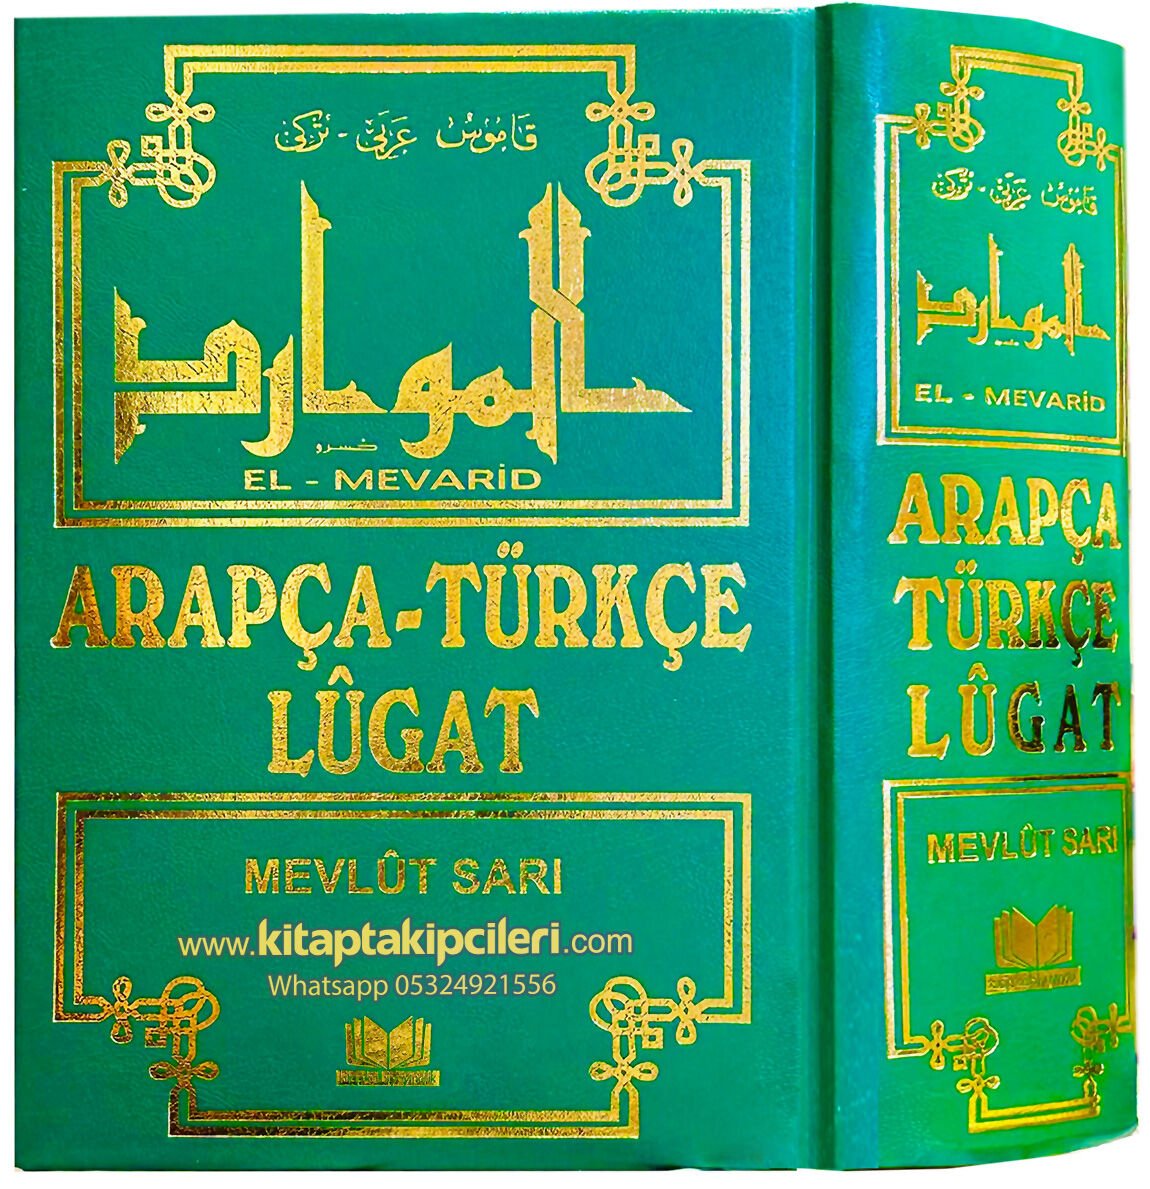 El Mevarid Arapça Türkçe Lugat Mevlüt Sarı, Büyük Boy 1695 Sayfa, Siyah Kırmızı Yazı Şamua Kağıt